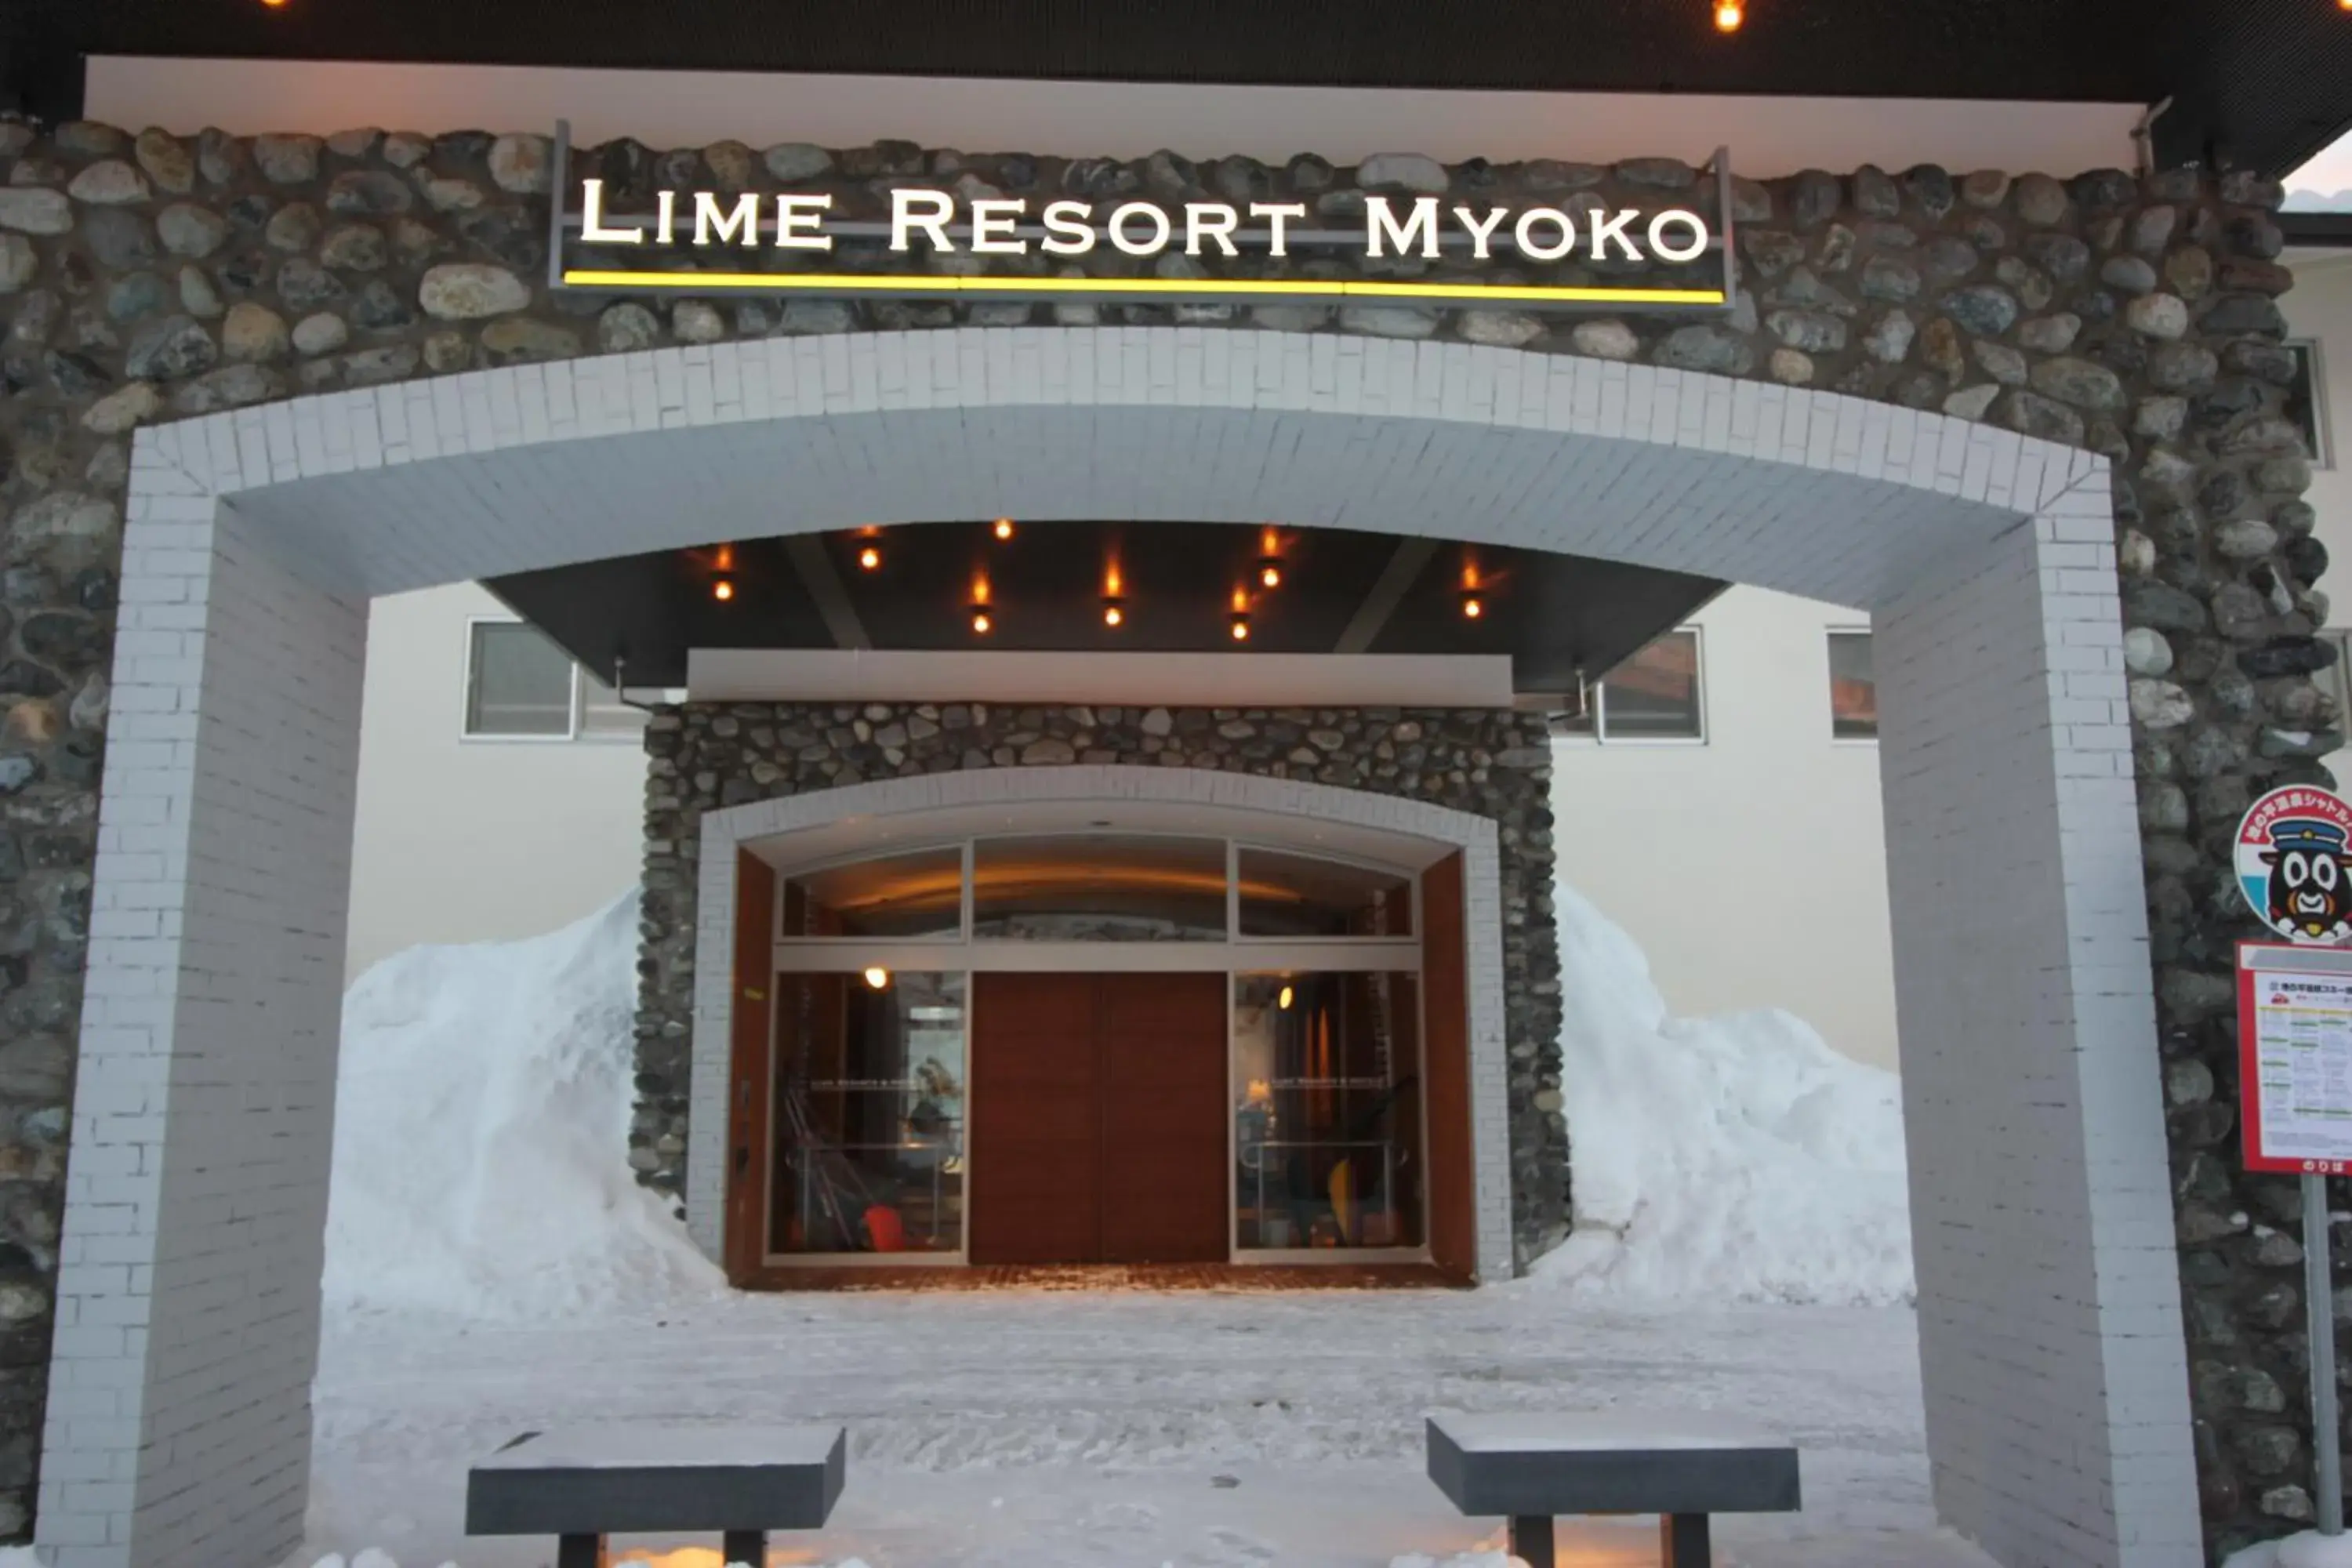 Facade/entrance in Lime Resort Myoko